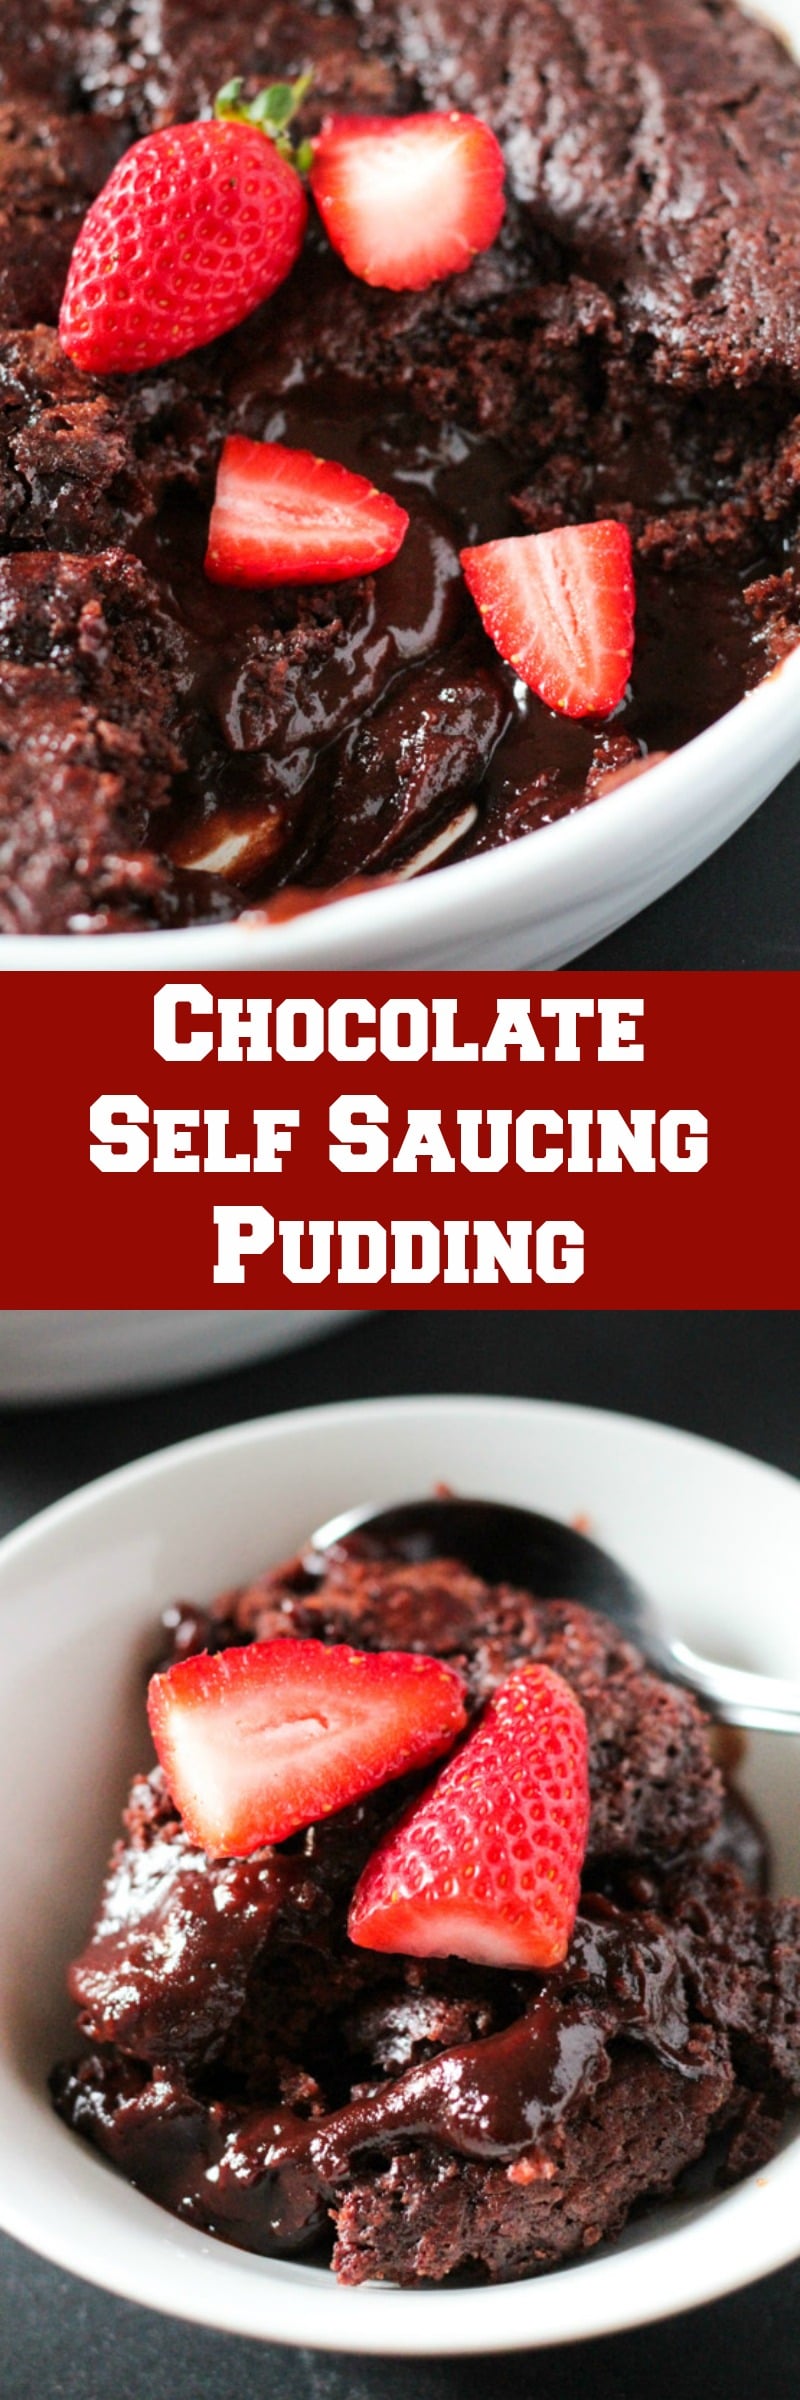 Chocolate Self Saucing Pudding 